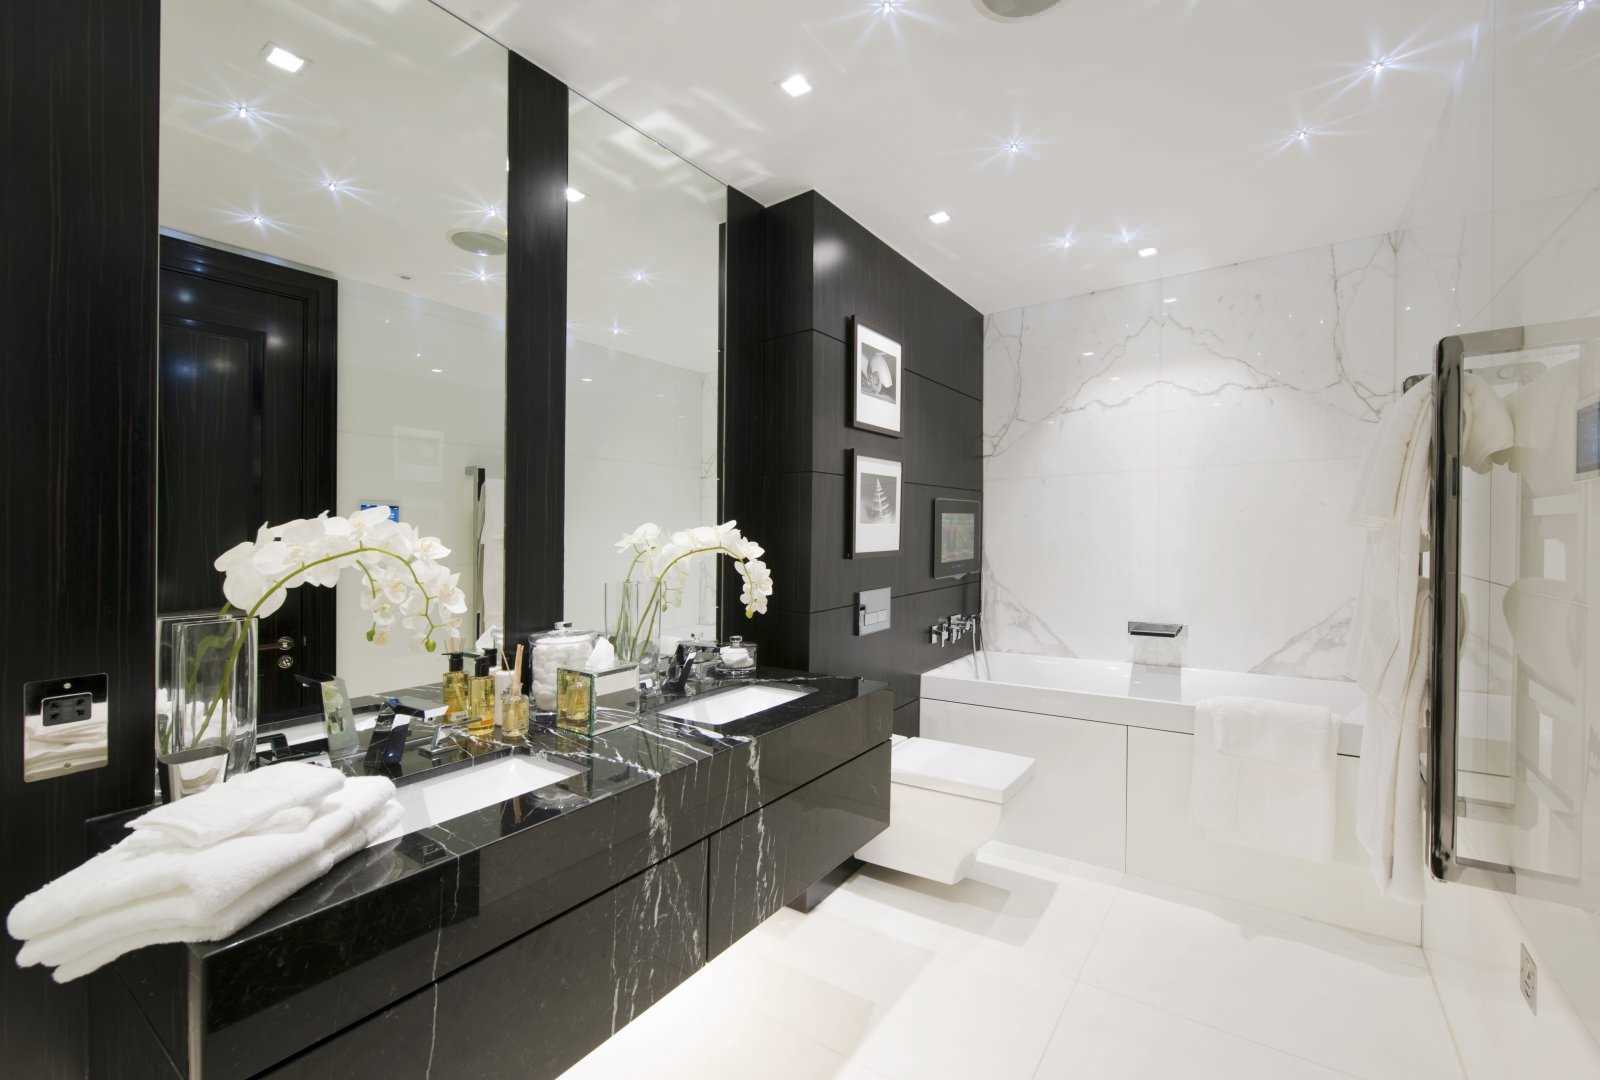 version d'un beau design de salle de bain en noir et blanc